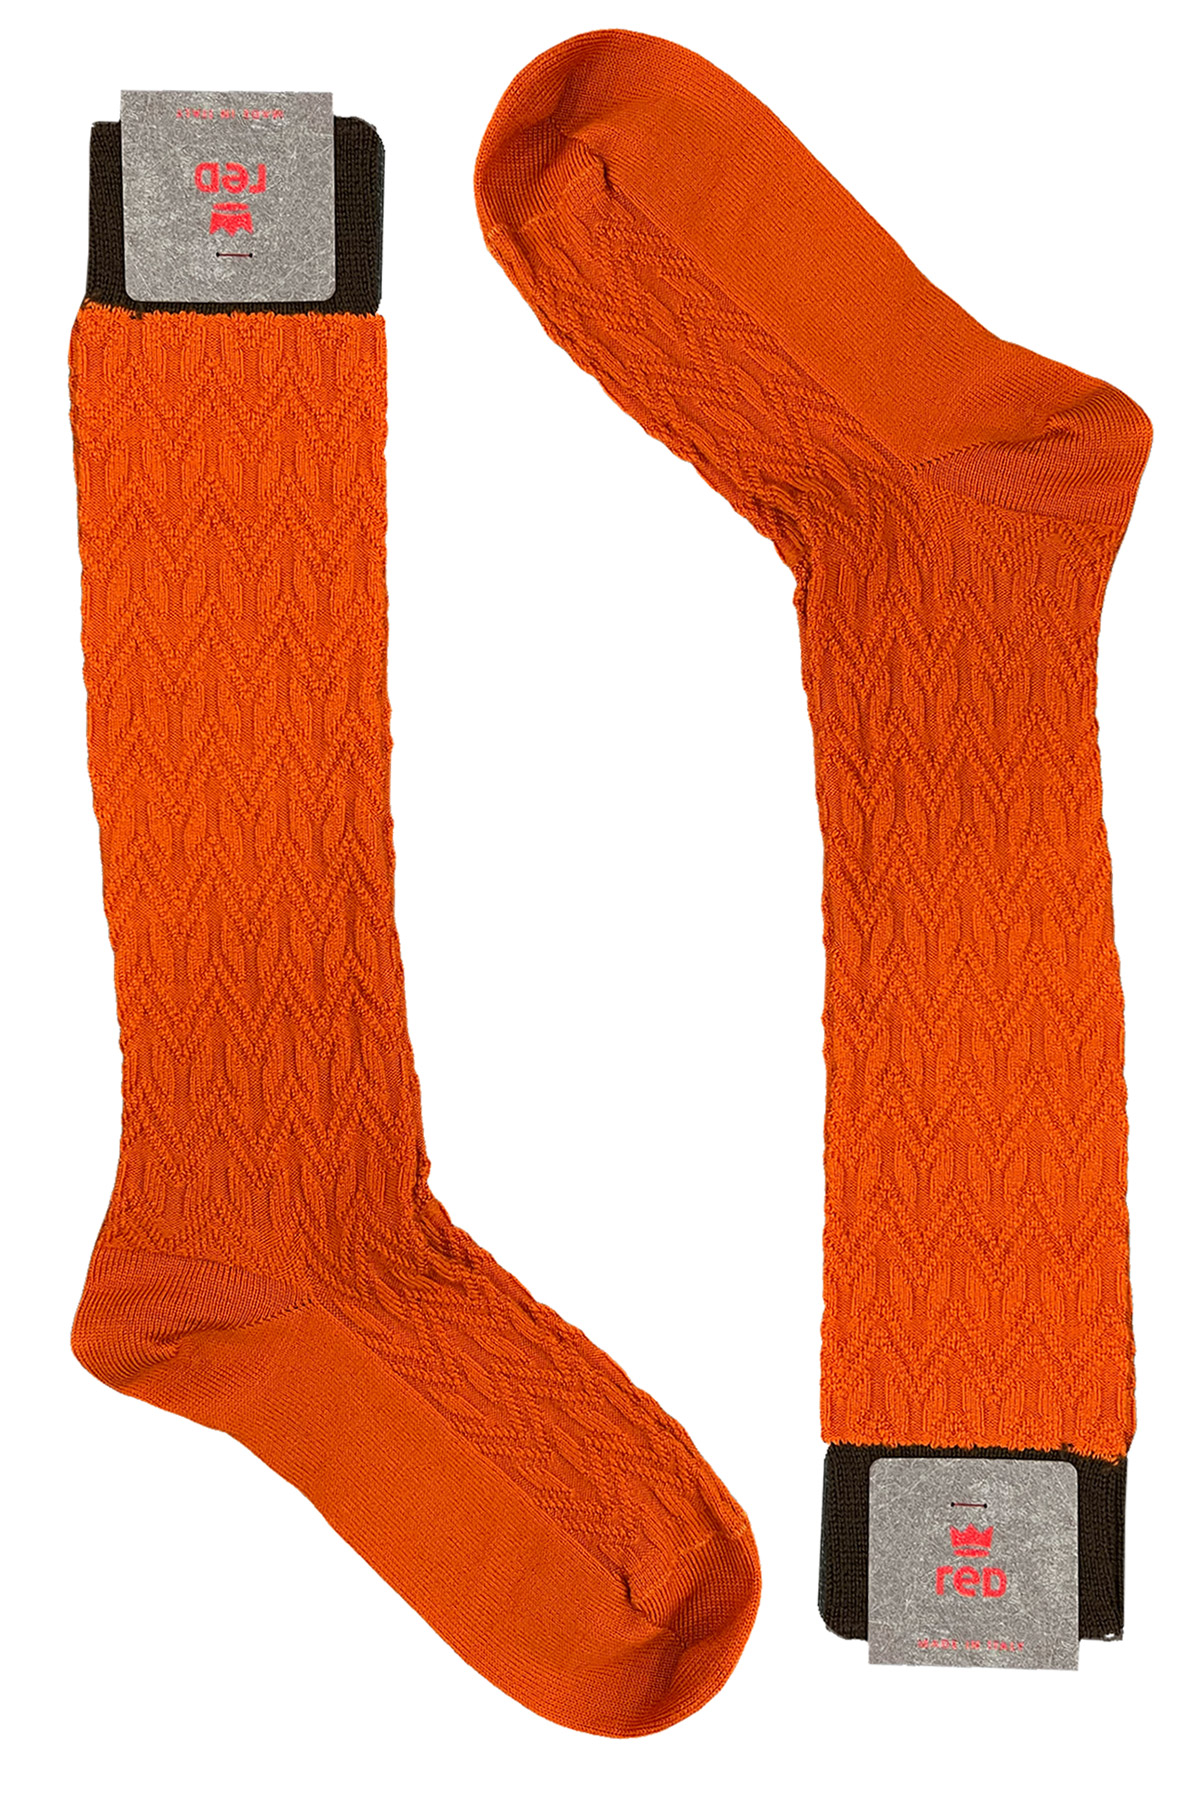 Calzini uomo lunghi arancio in lana fantasia geometrica a rilievo con elastico marrone made in italy